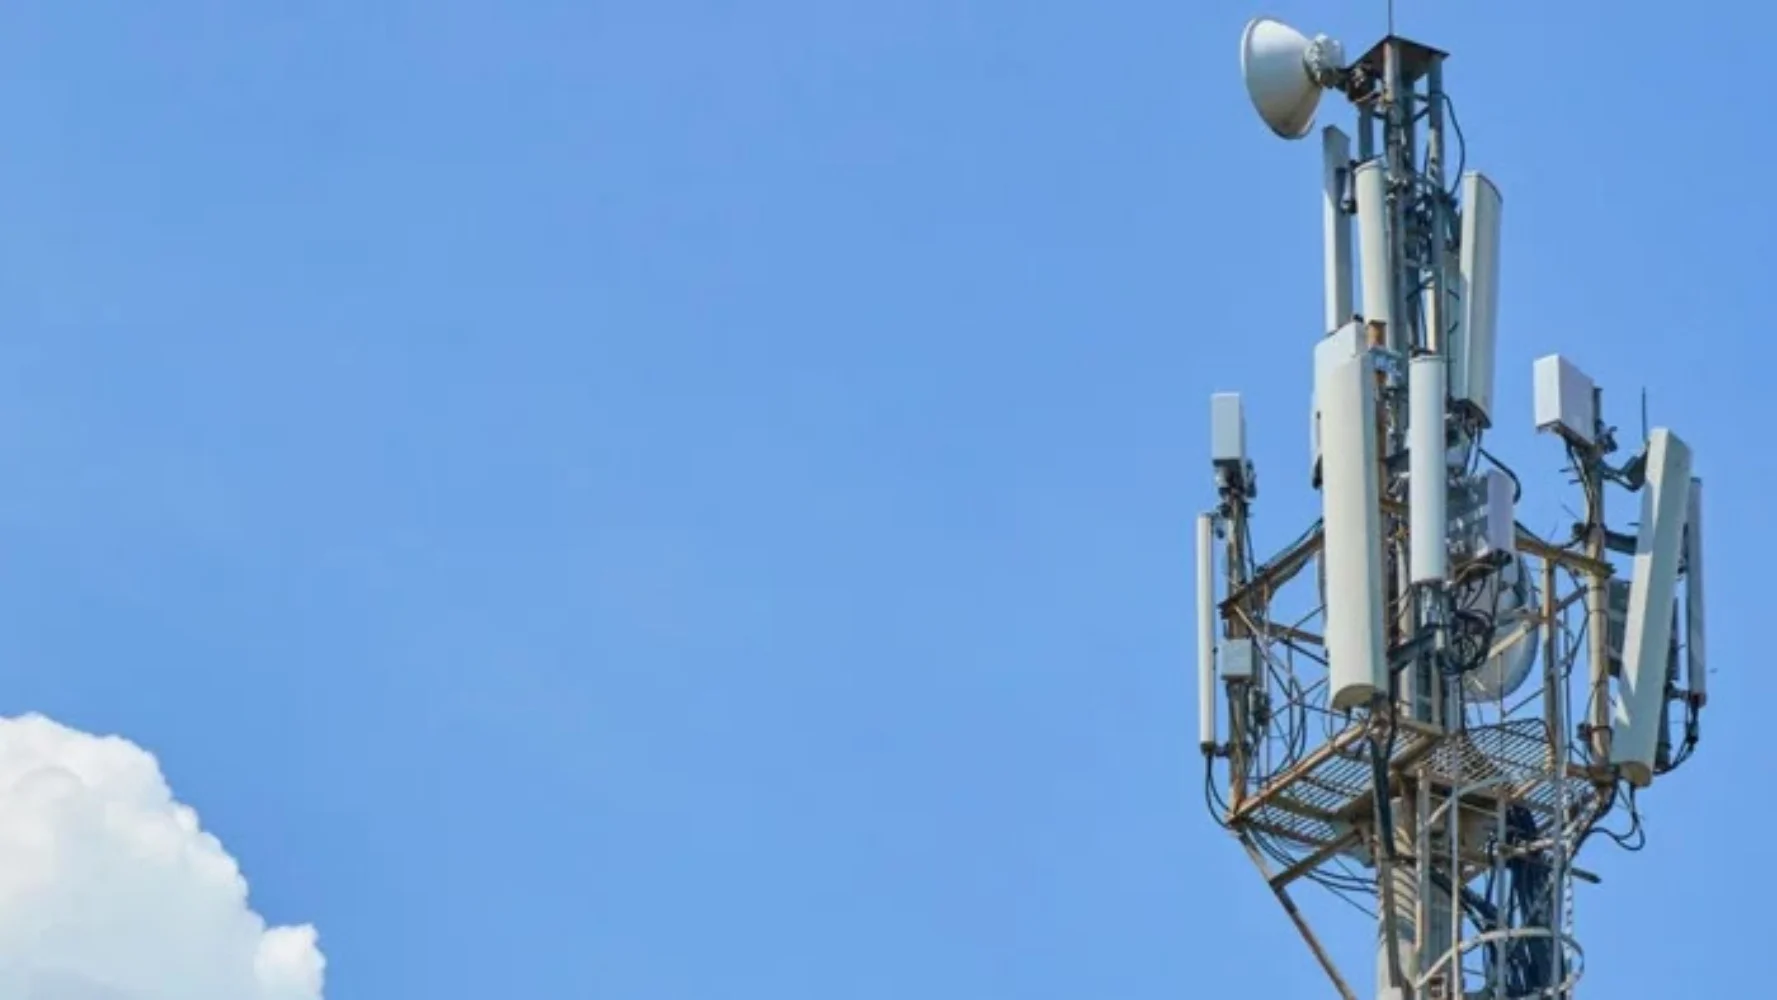 Las operadoras móviles piden revisar las condiciones de subasta de las frecuencias para que sea factible 5G en el país